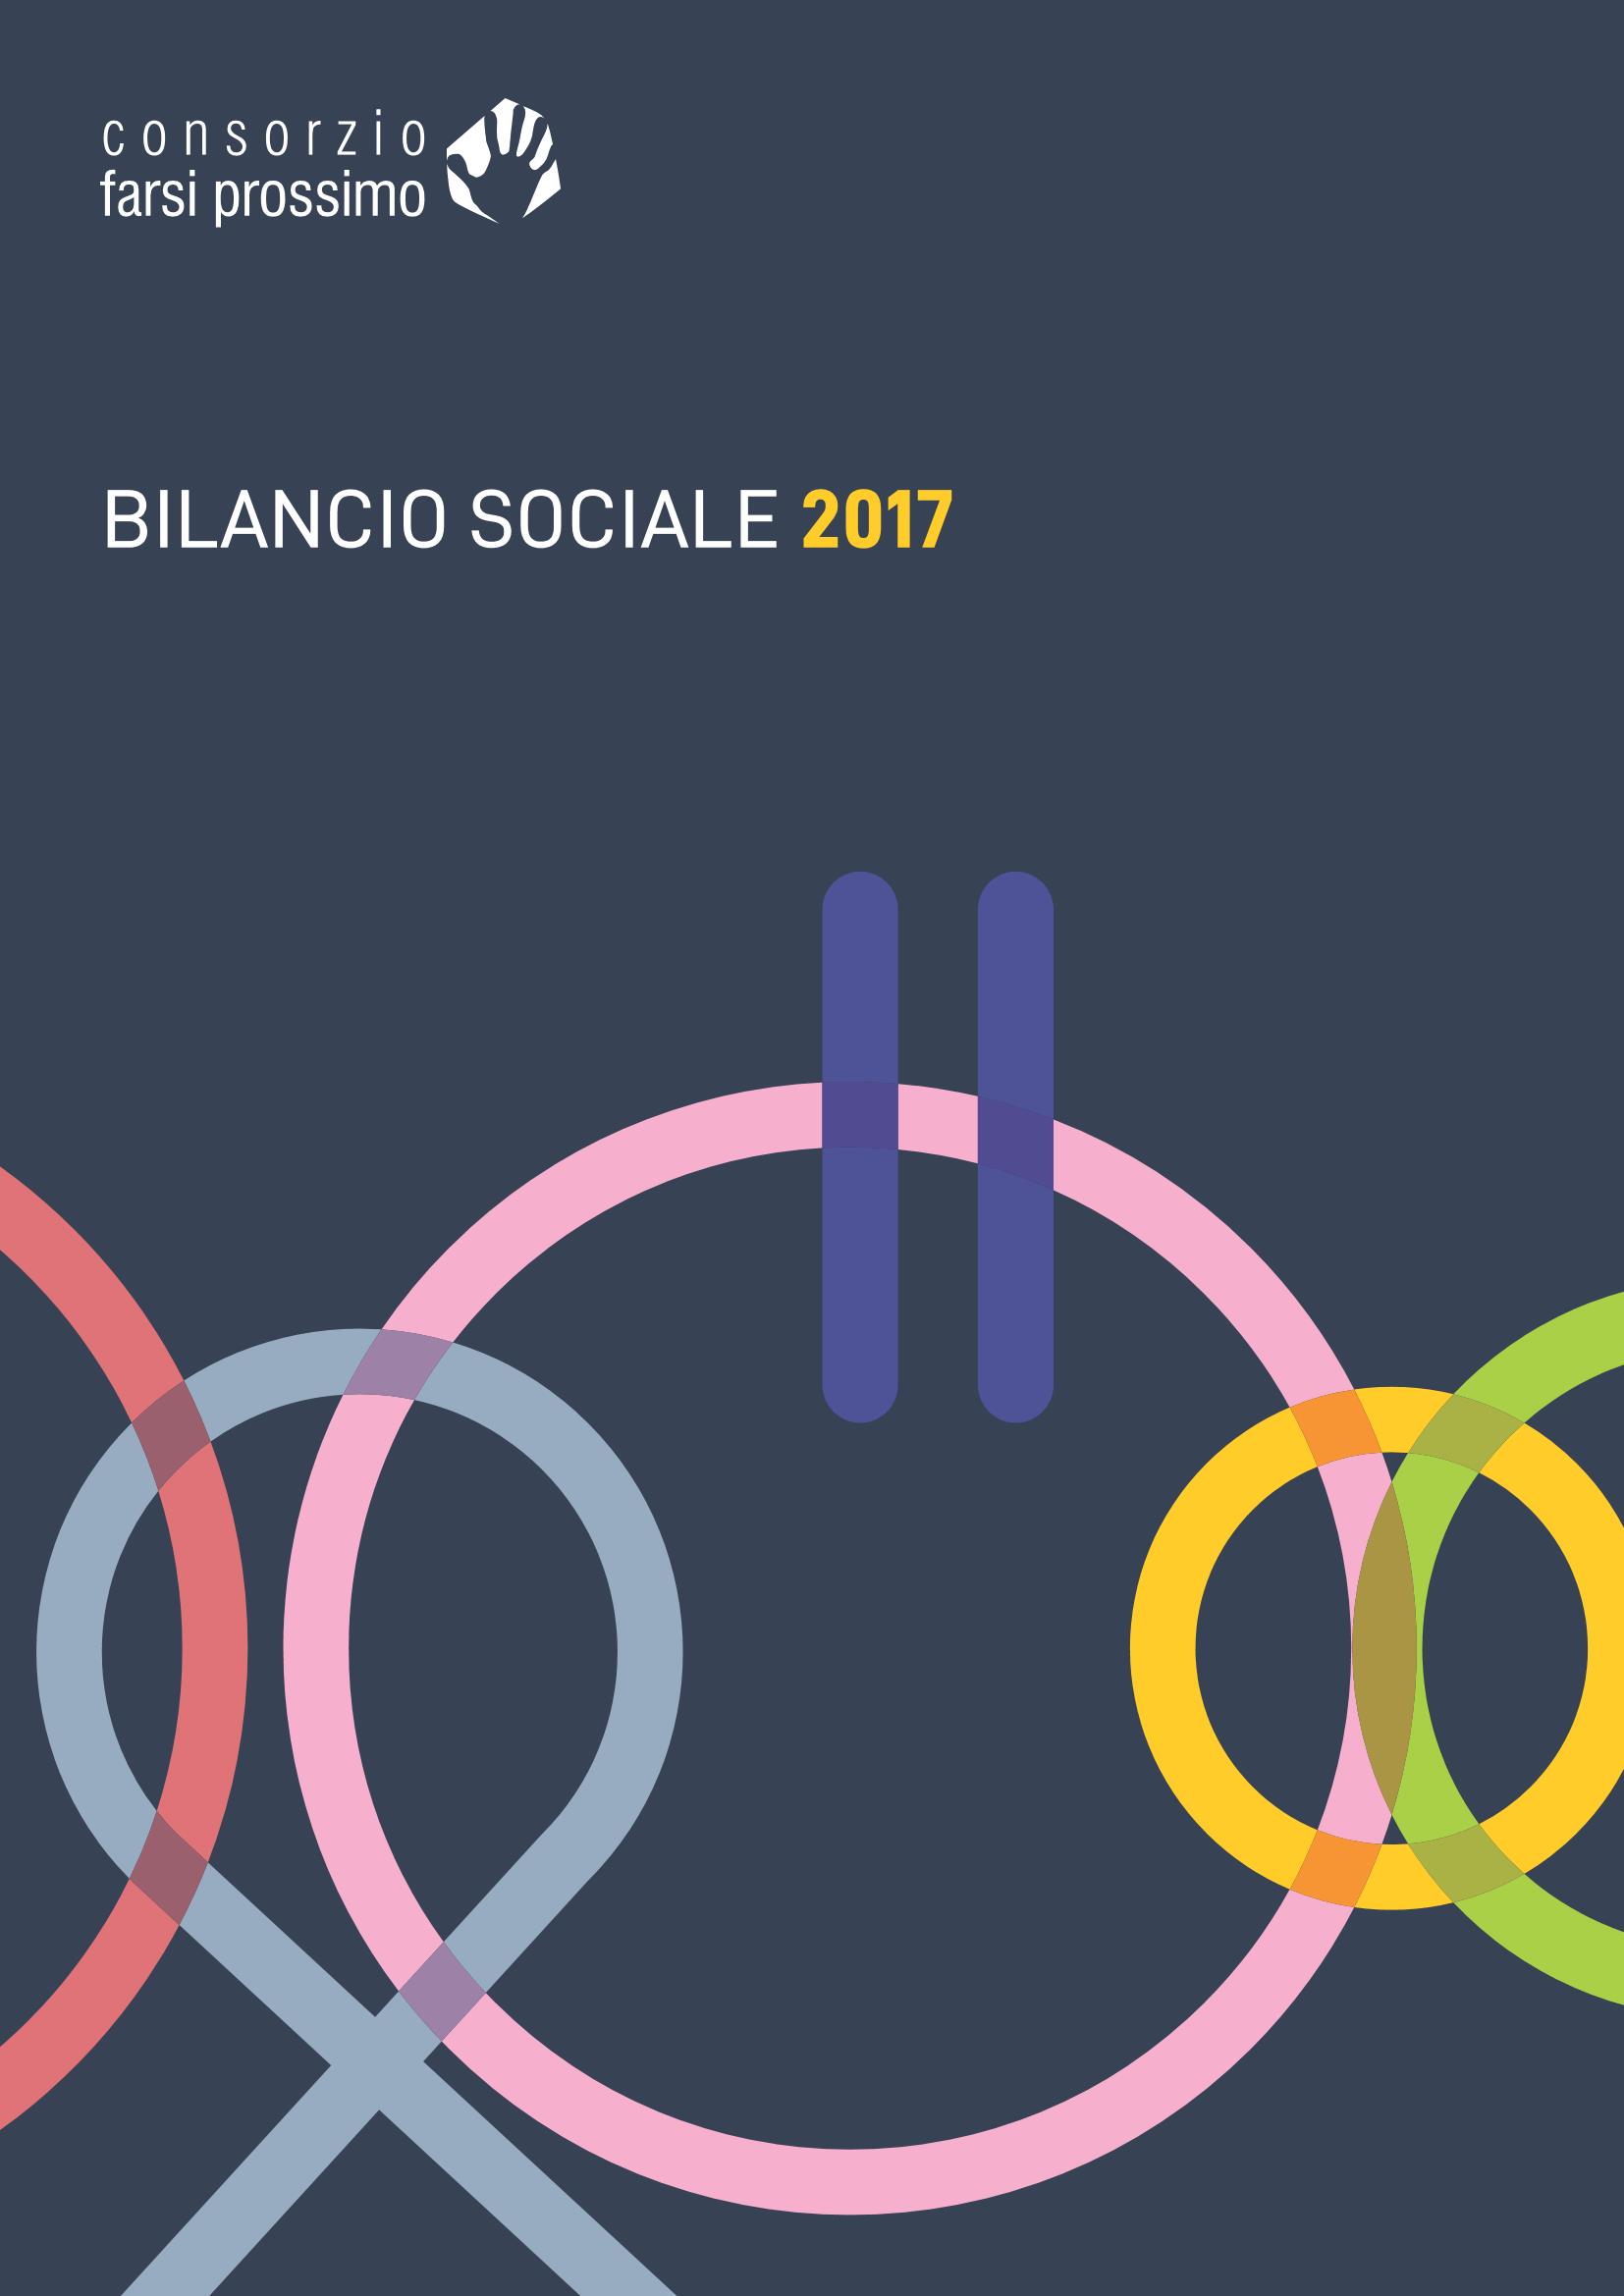 Bilancio sociale 2017 Page 1